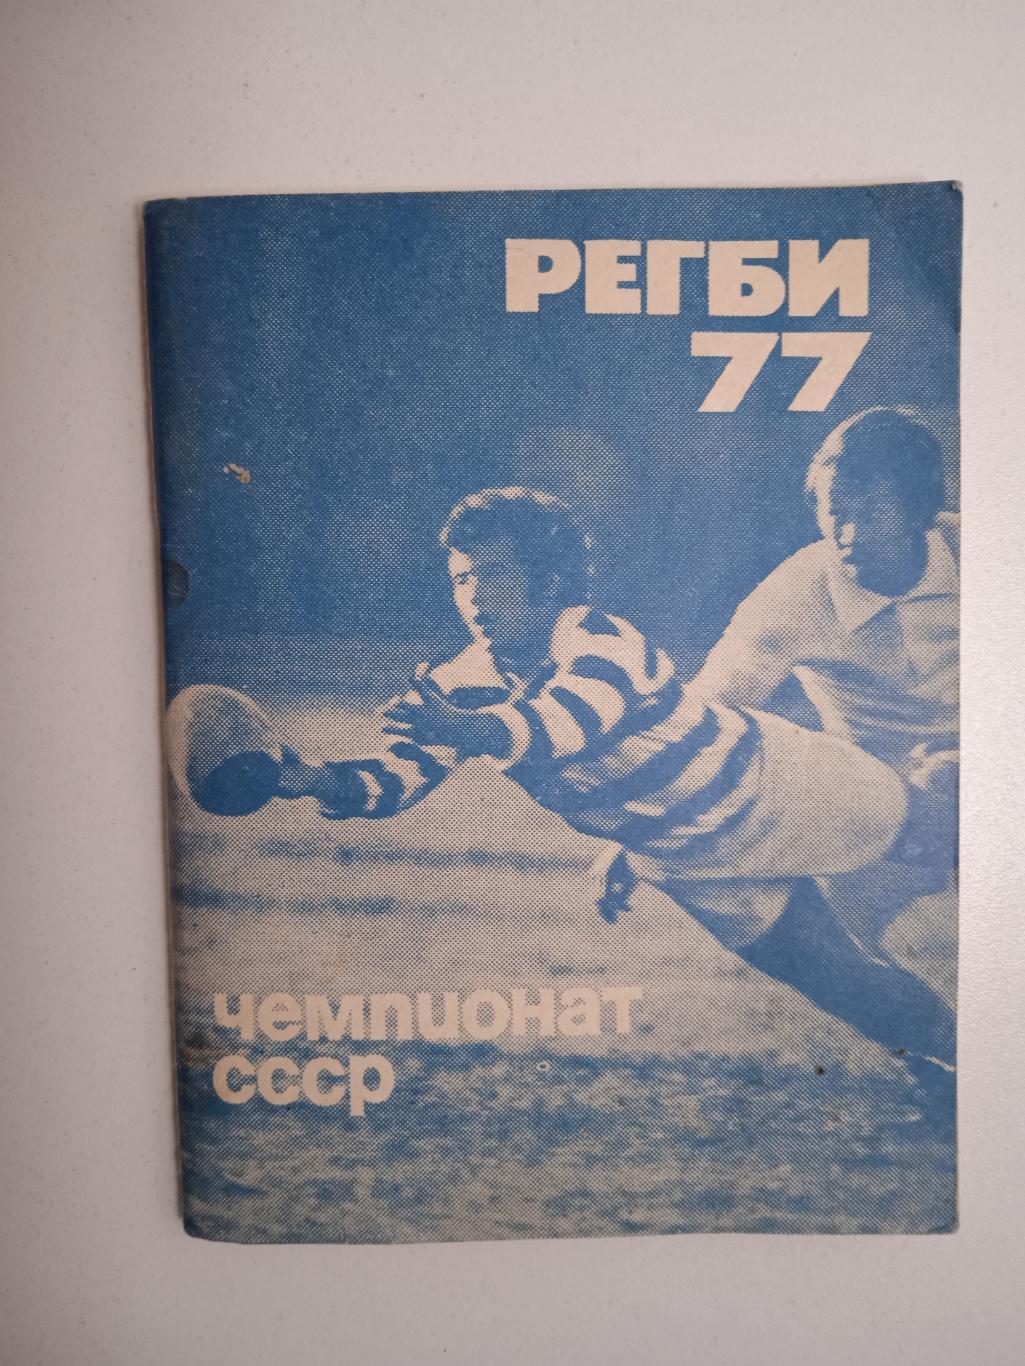 Справочник регби 1977